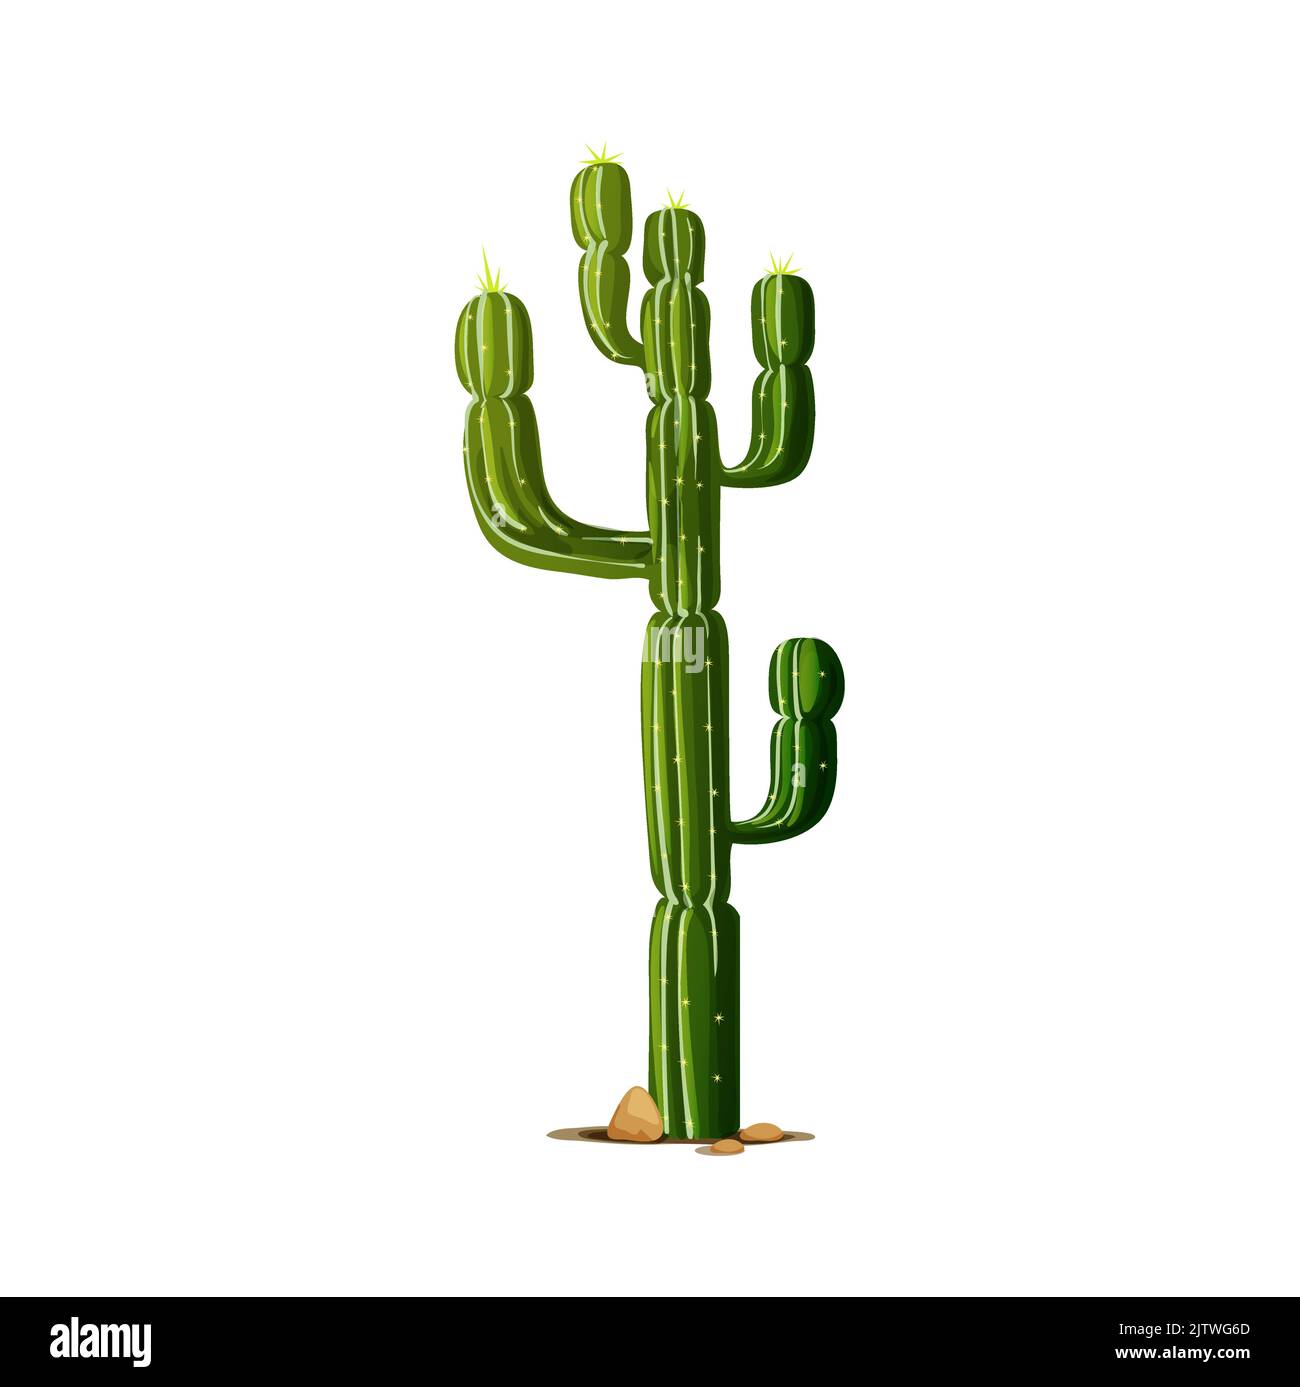 Häkelanleitung Wüstenkaktus, Häkelanleitung Mexikanischer Kaktus,  Häkelanleitung Topfpflanze, Häkelanleitung Zimmerpflanze